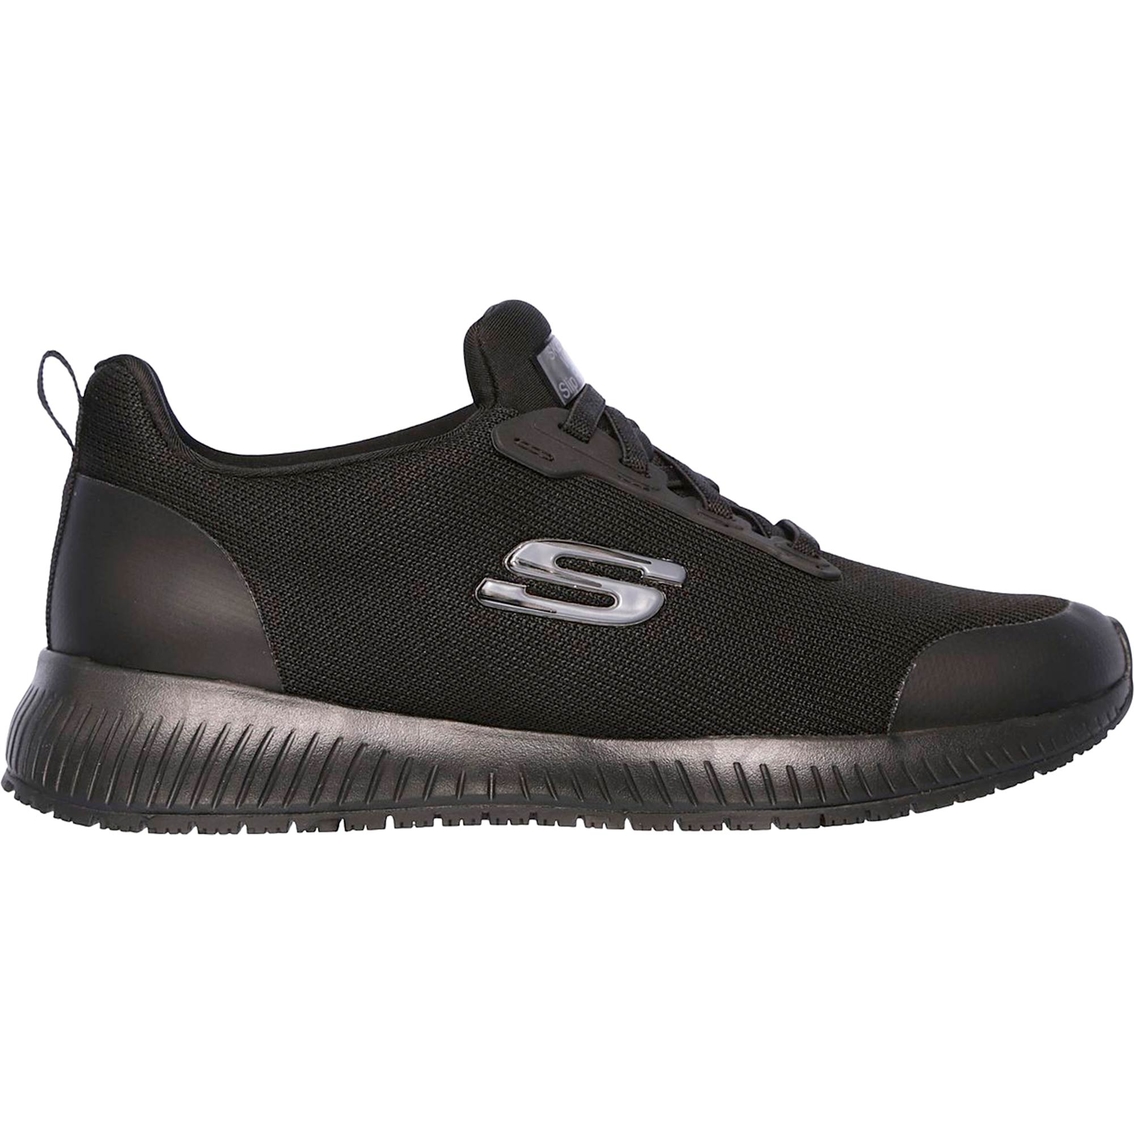 Skechers Women's Squad SR Slip On Slip Resistant Shoes - Image 2 of 6